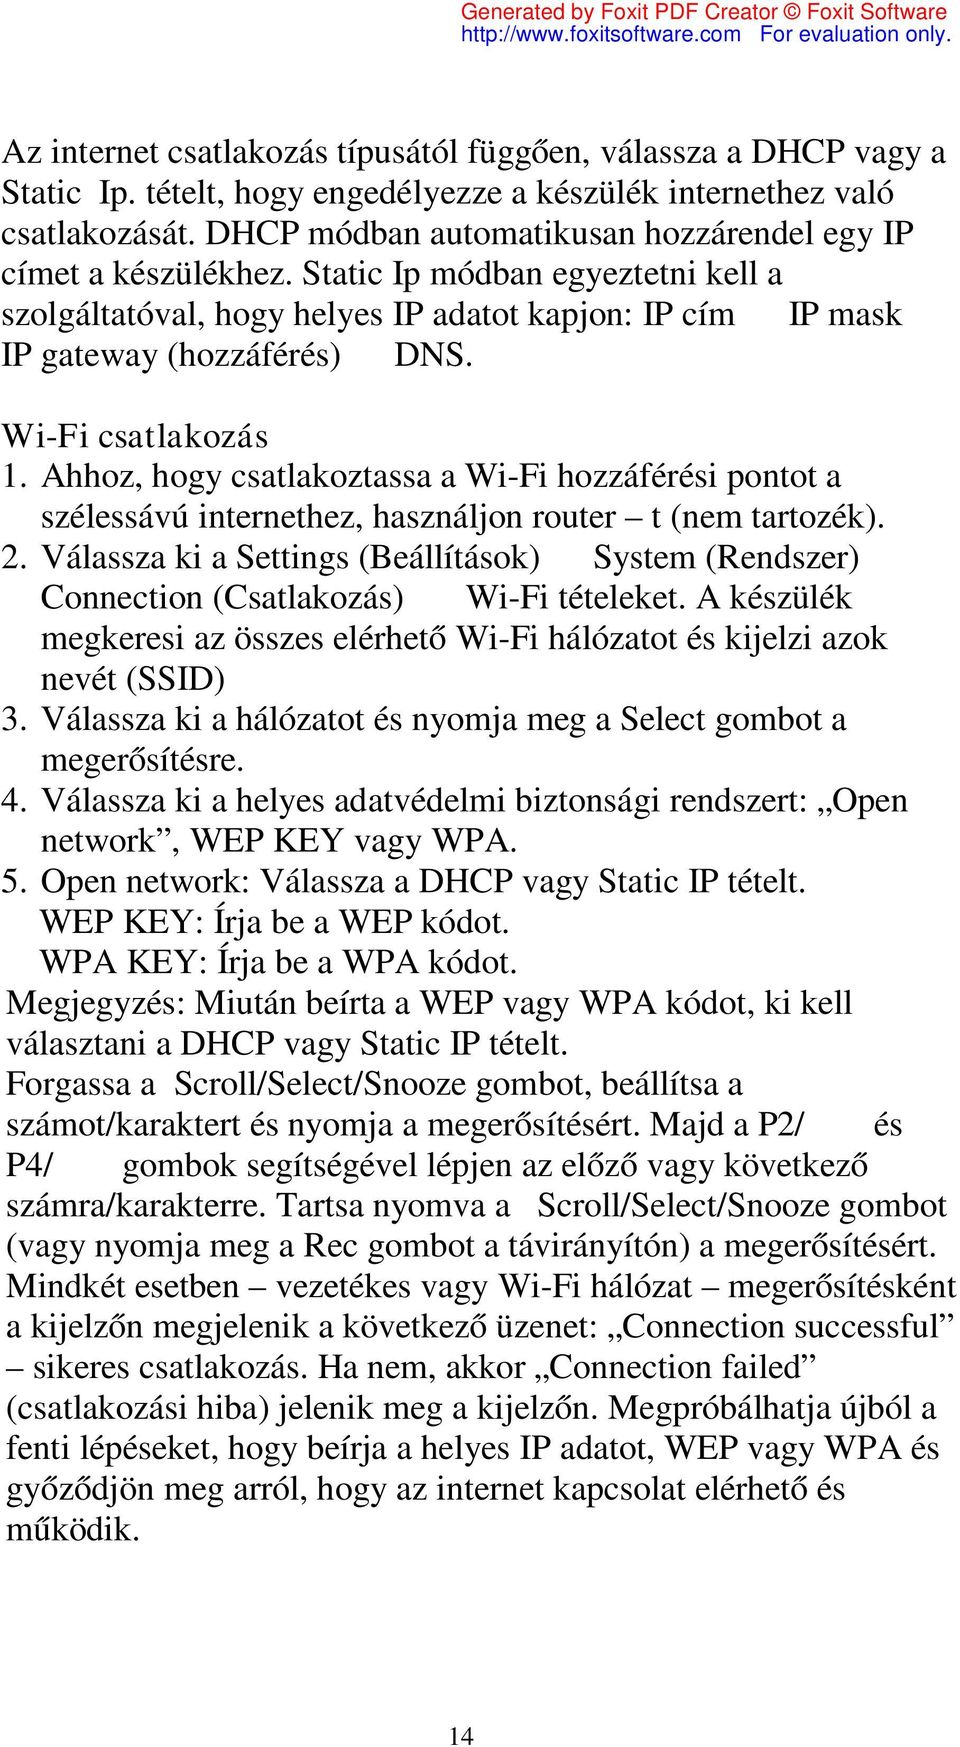 Wi-Fi csatlakozás 1. Ahhoz, hogy csatlakoztassa a Wi-Fi hozzáférési pontot a szélessávú internethez, használjon router t (nem tartozék). 2.